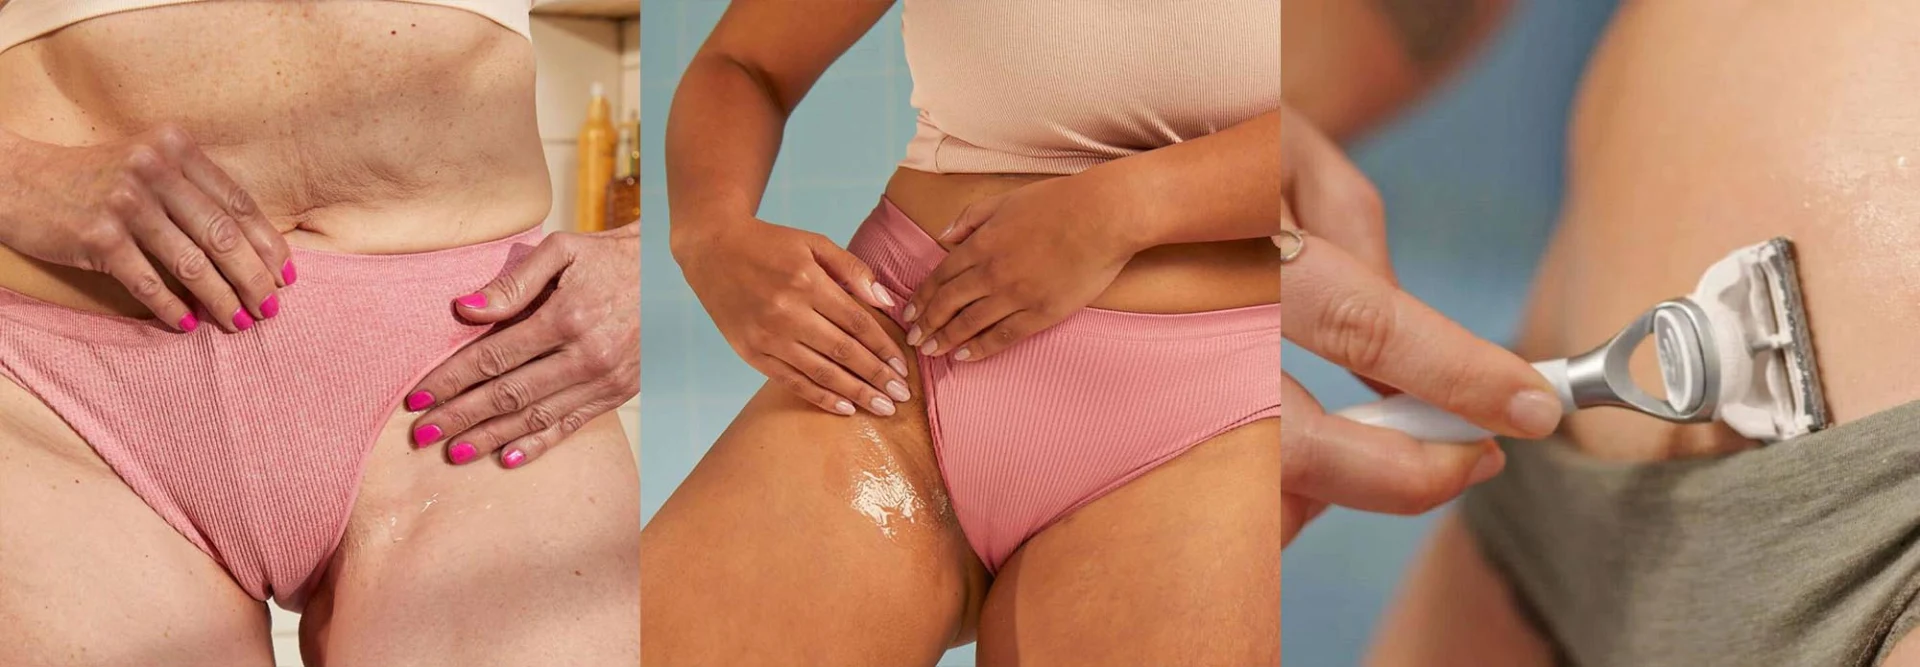 Collage d'une femme mettant du gel de rasage sur sa jambe et d'une femme se rasant